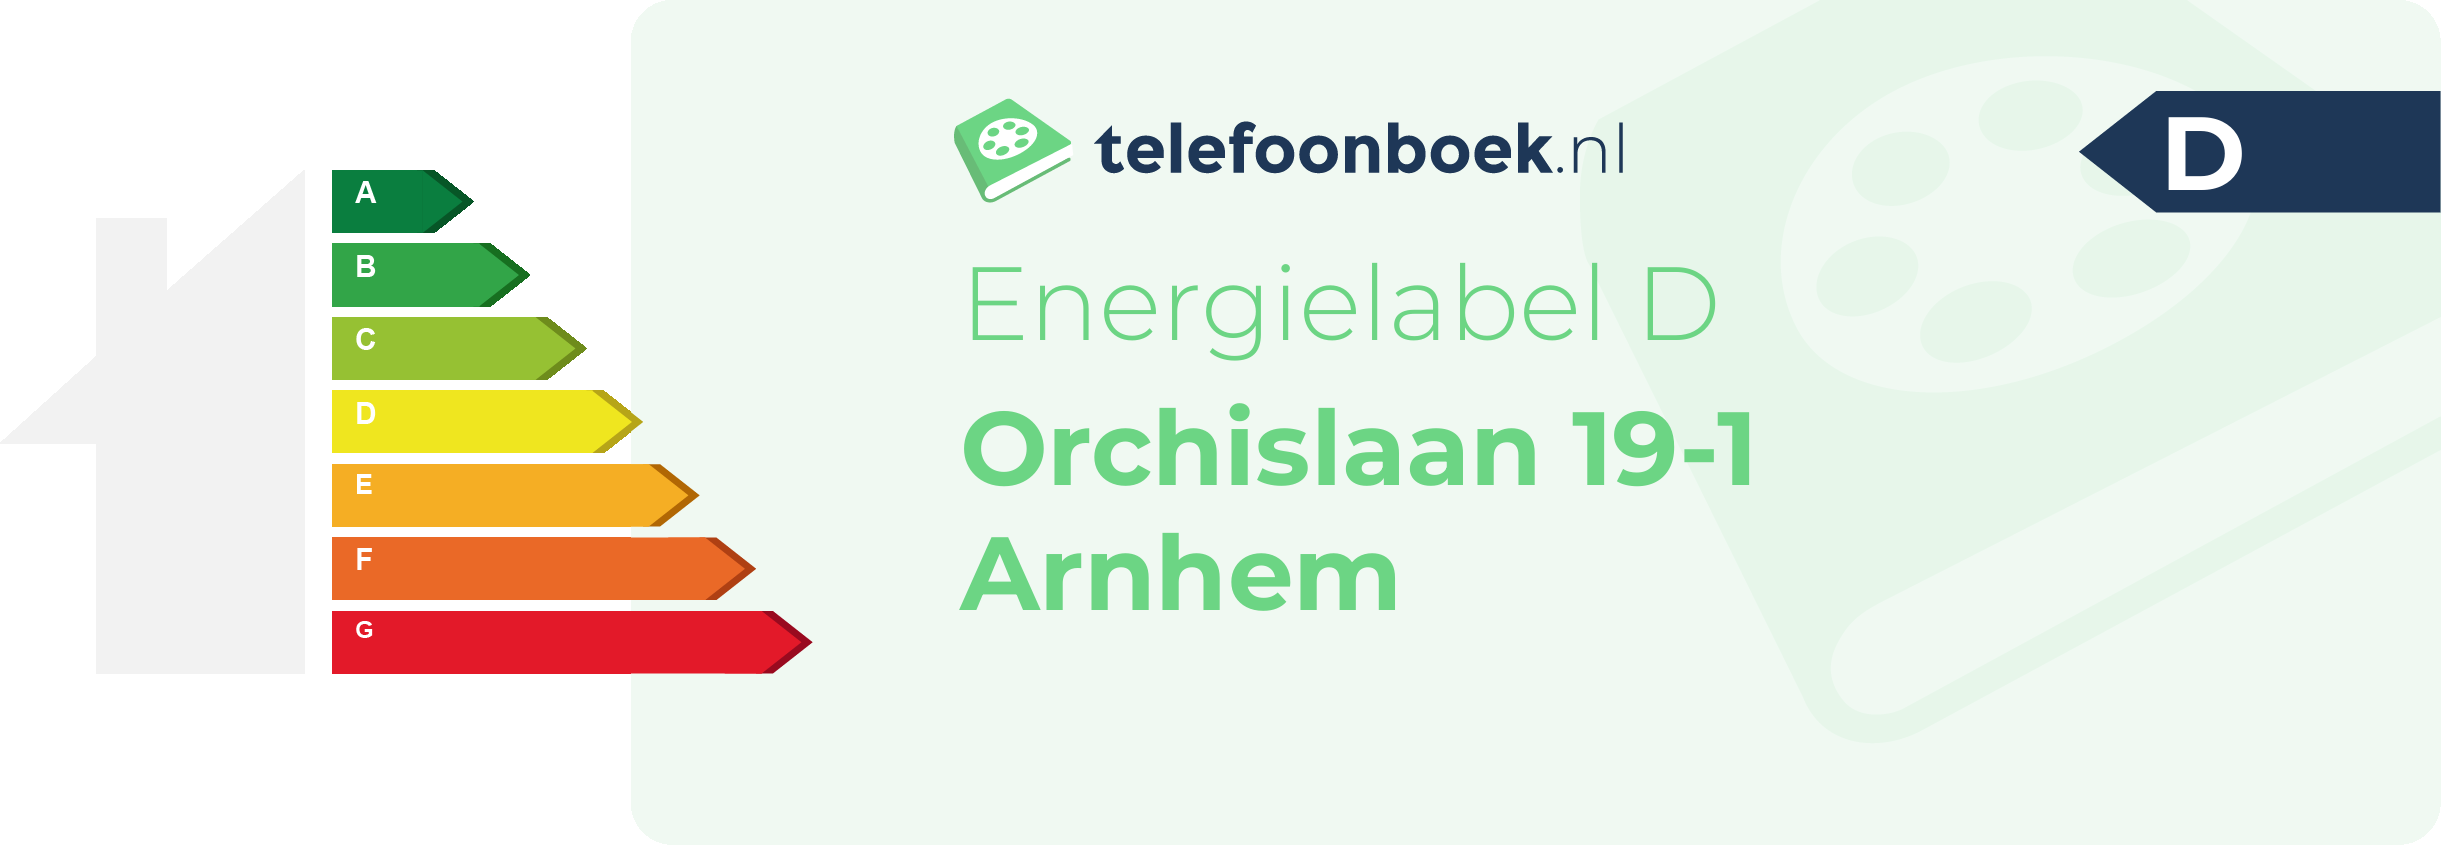 Energielabel Orchislaan 19-1 Arnhem